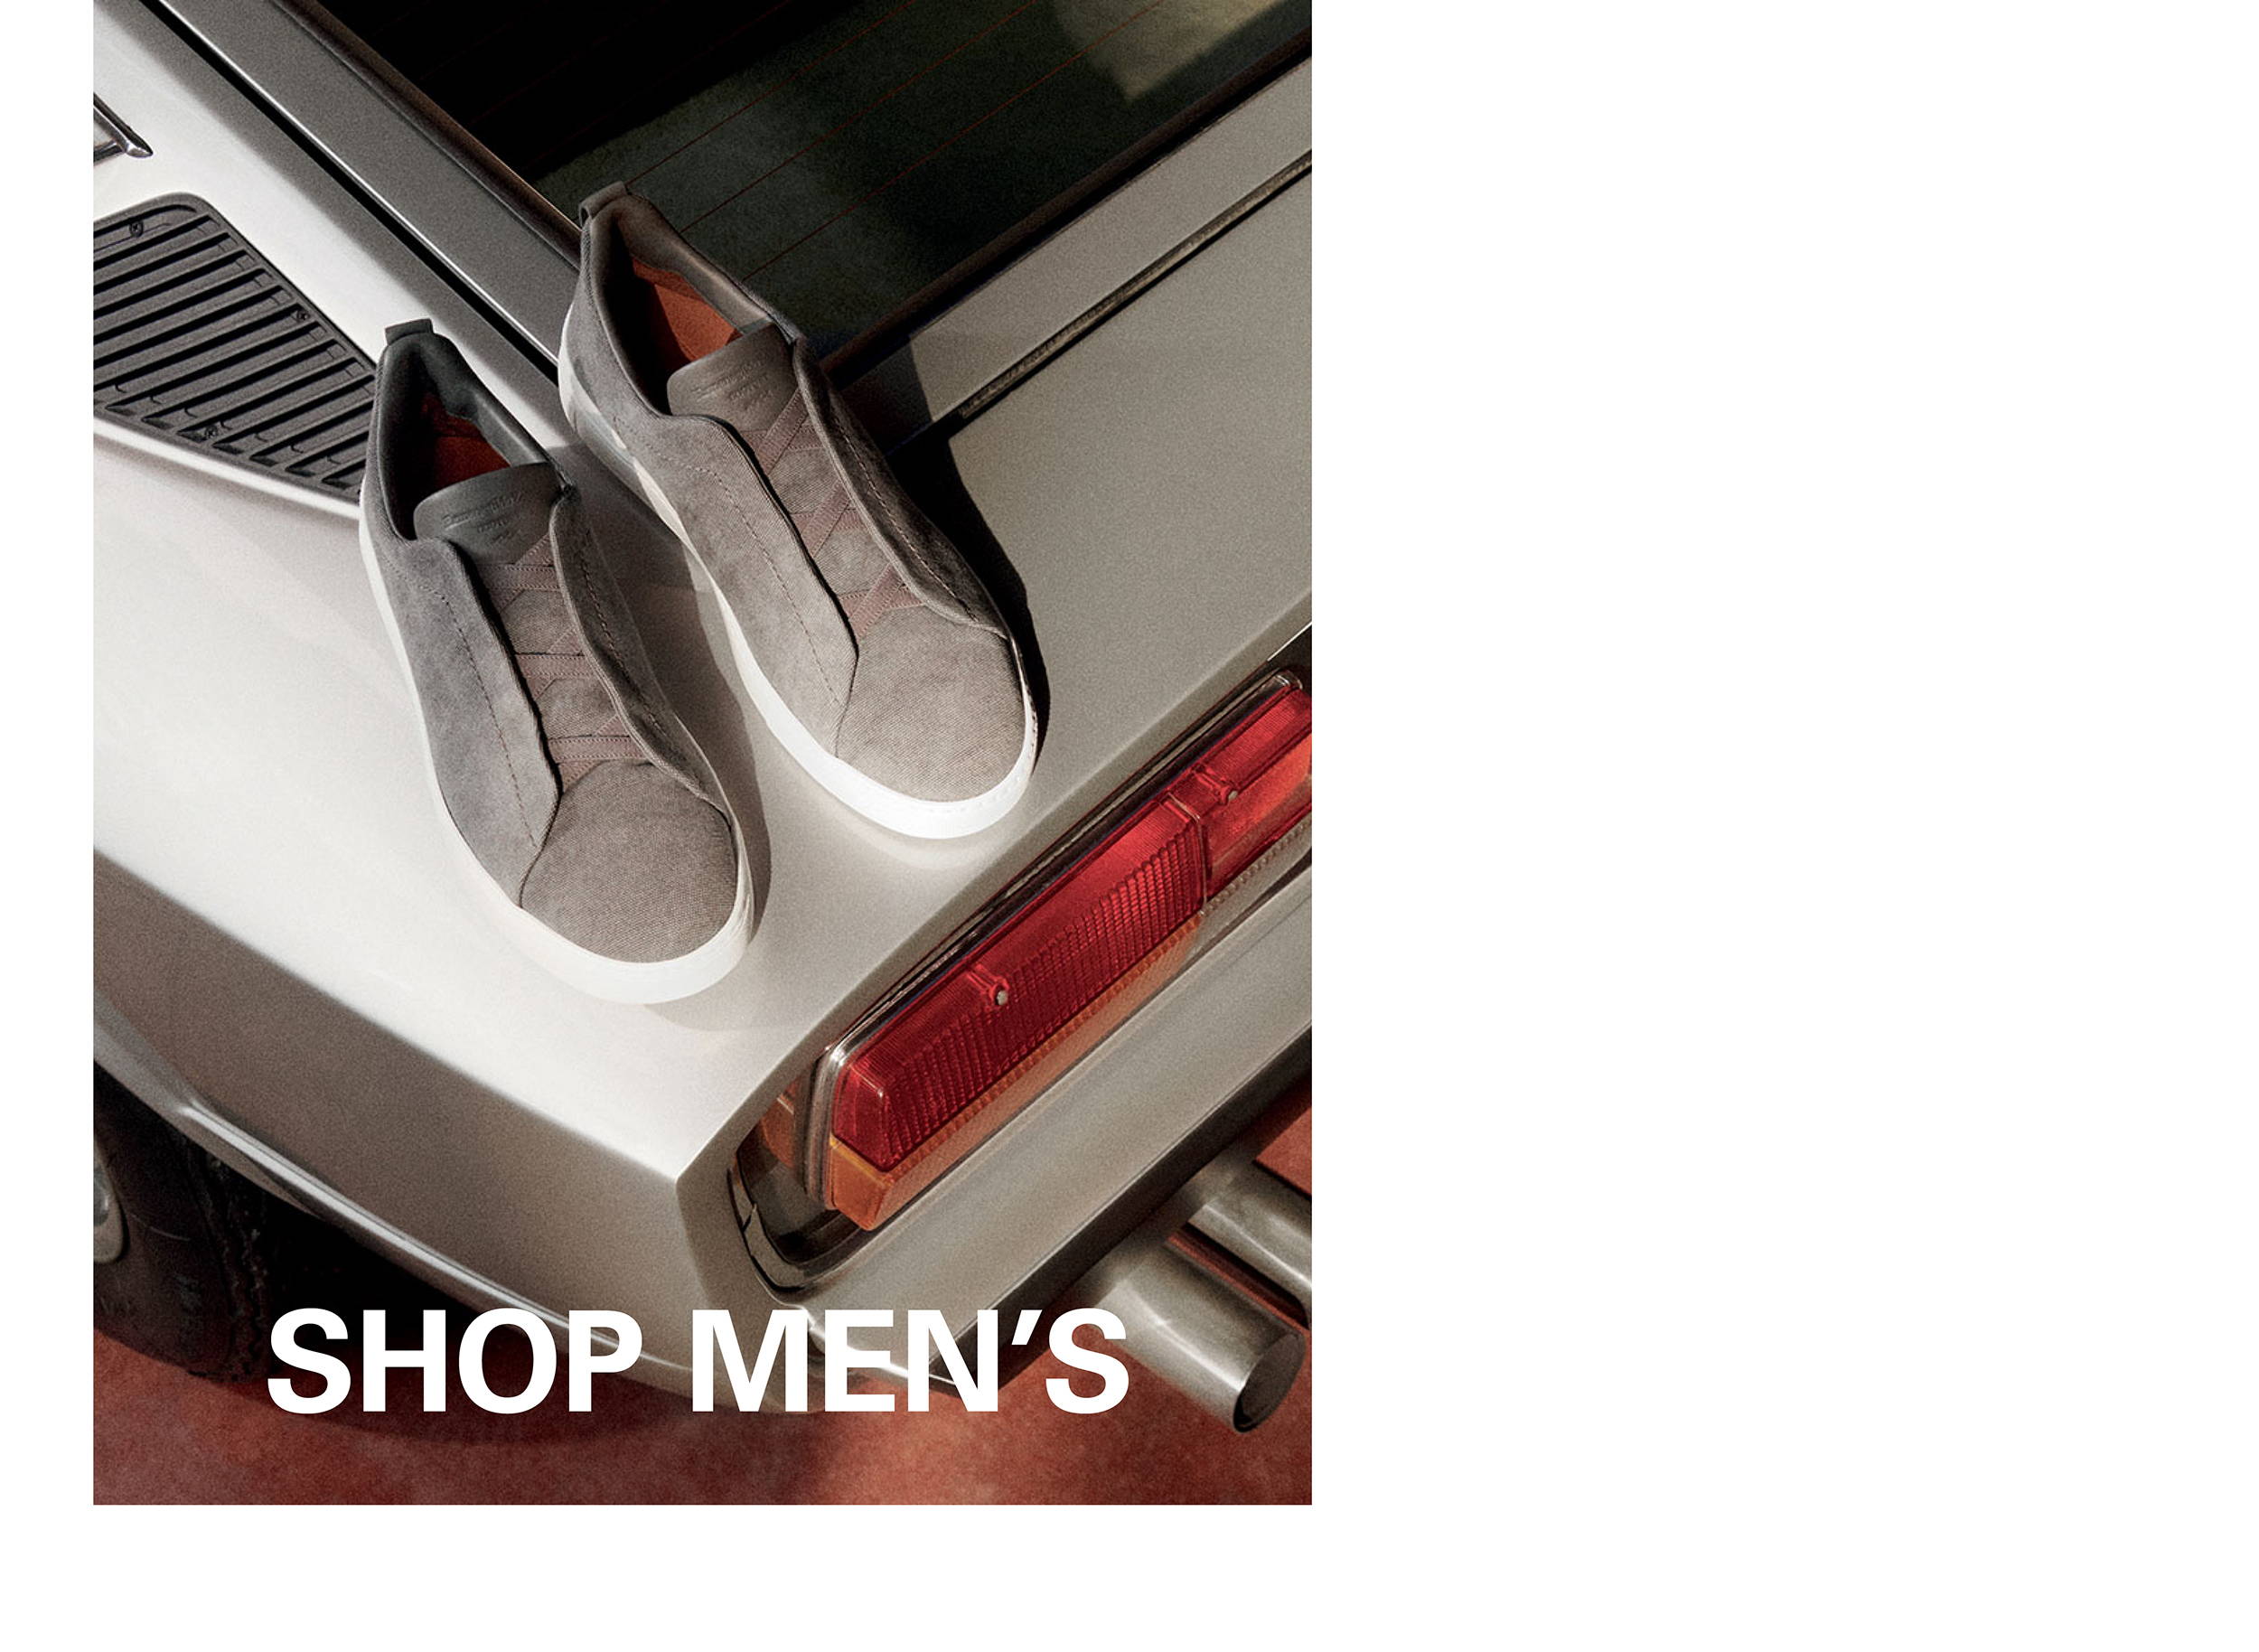 Shop Men's Shoes